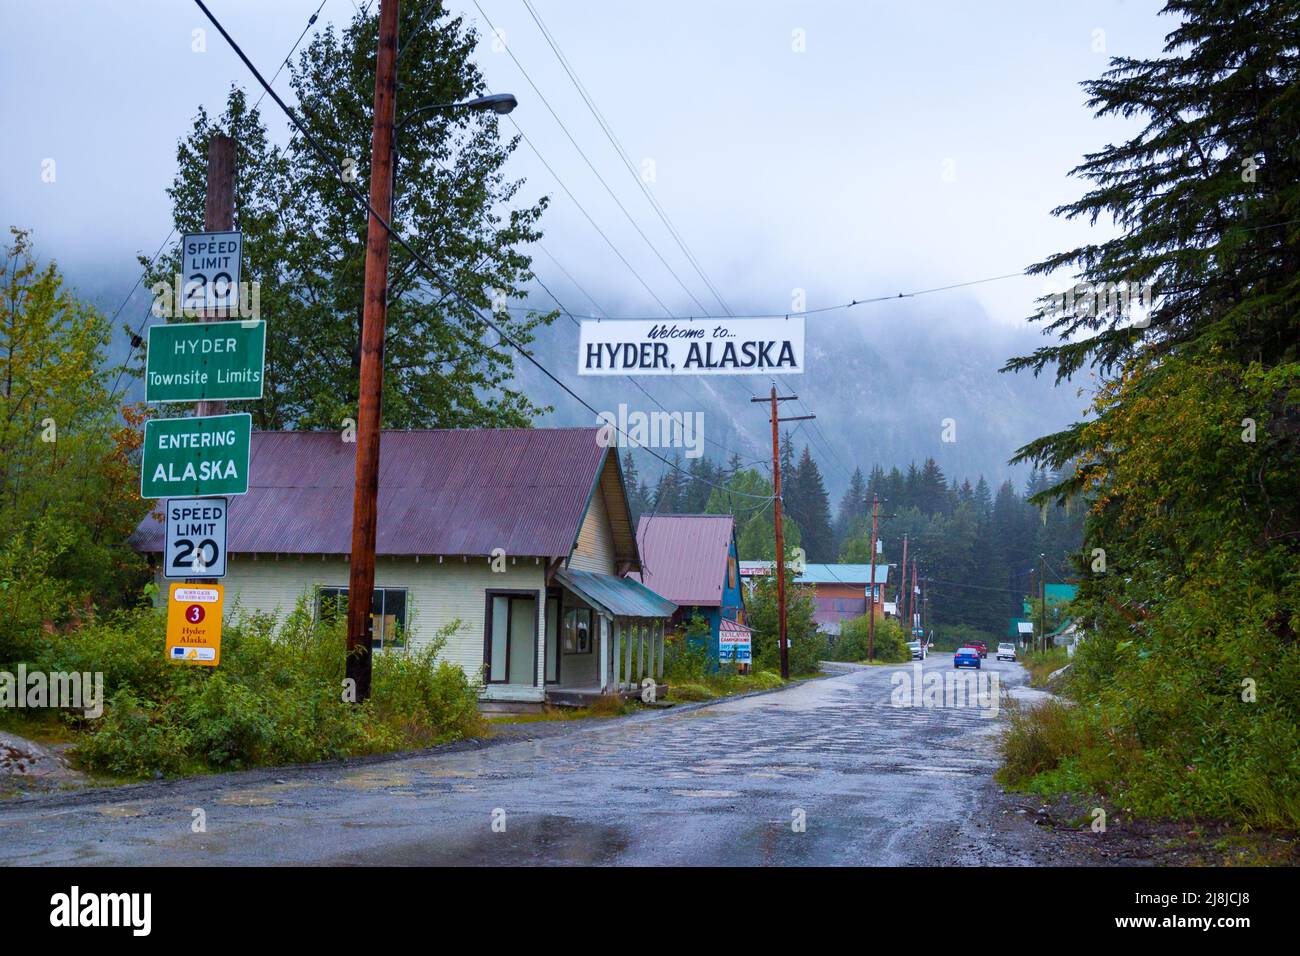 Hyder, die östlichste Stadt im US-Bundesstaat Alaska, ist das Tor zum Bear Viewing Area am Fish Creek Wildlife Observation Site. Stockfoto